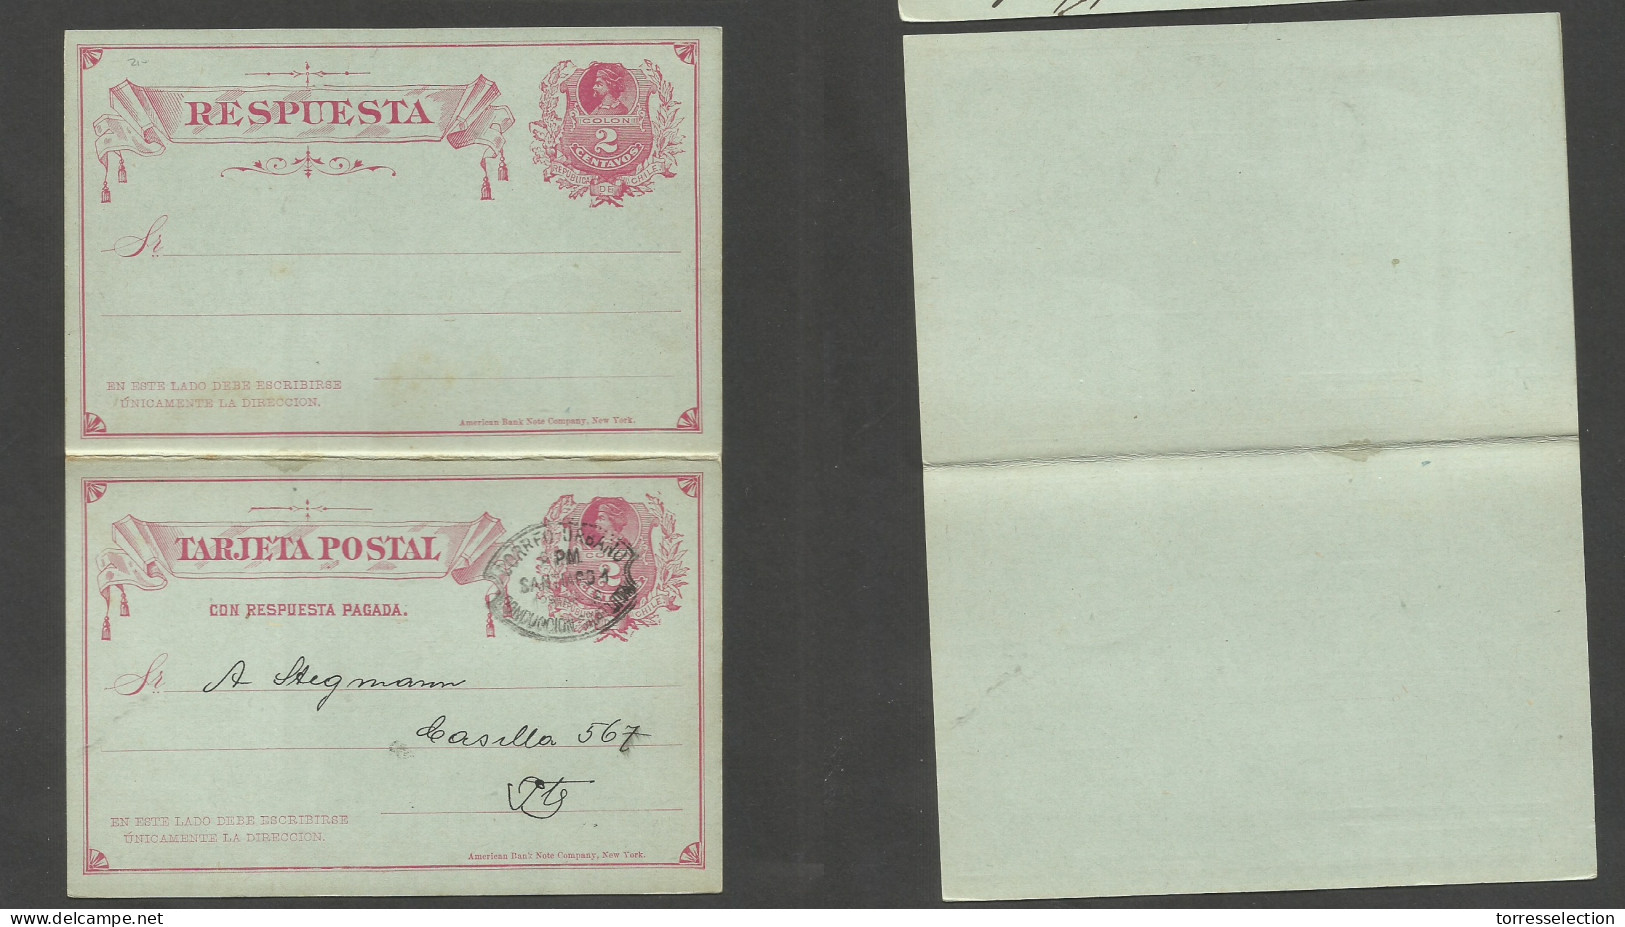 CHILE - Stationery. 1906 (12 March) Correo Urbano / Conduccion Gratuita. Local 2c Red Stat Card. - Chile